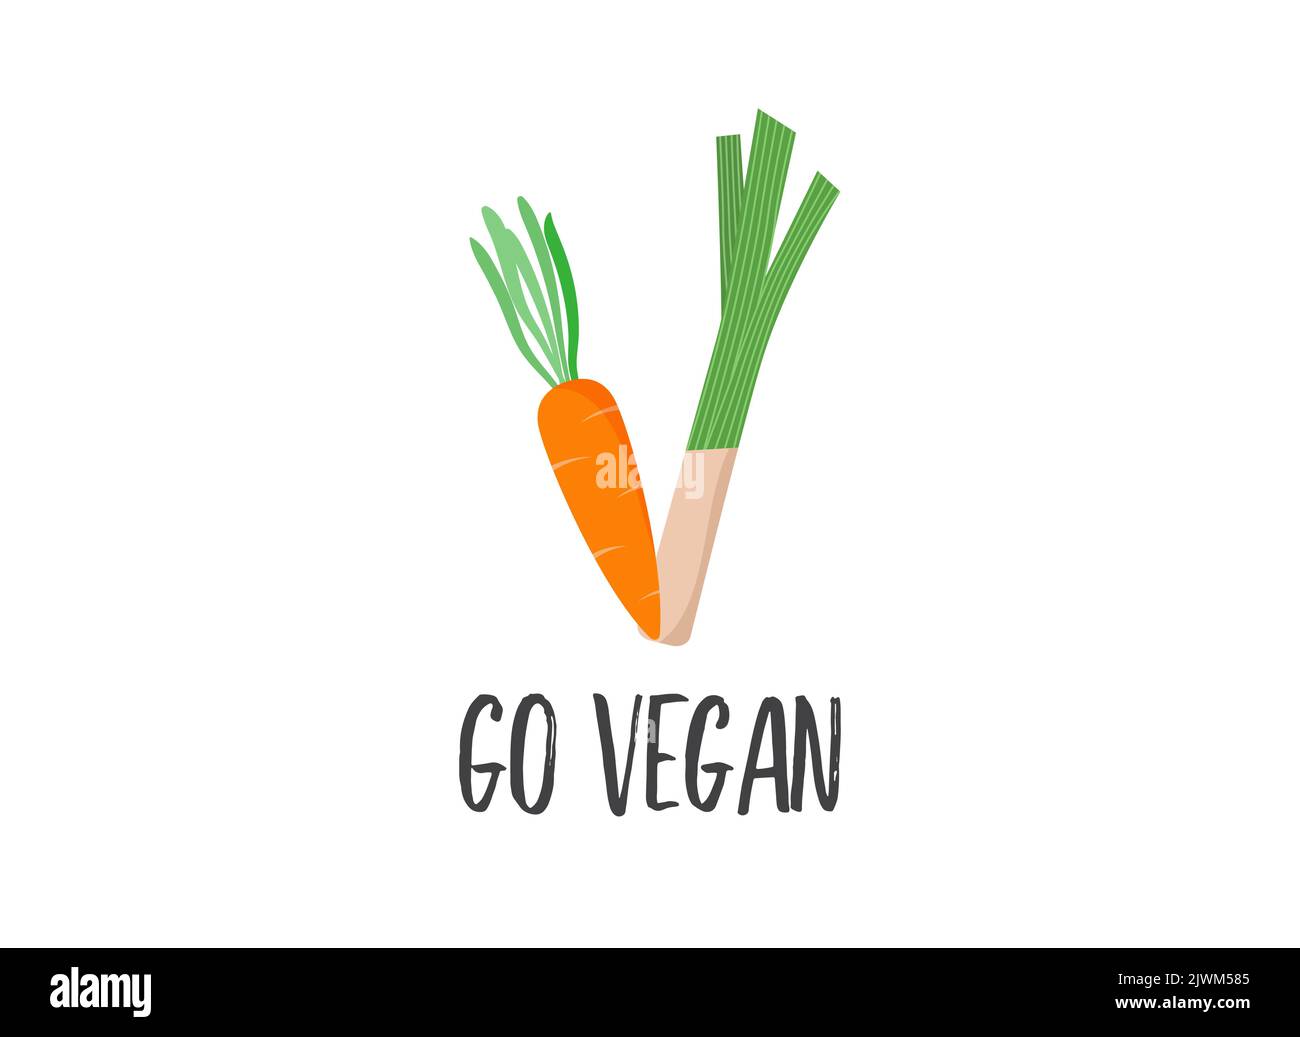 World Vegan Day, Concept Design con carota e sedano. Per promozioni, adesivi, banner, biglietti d'auguri sui social media Illustrazione Vettoriale